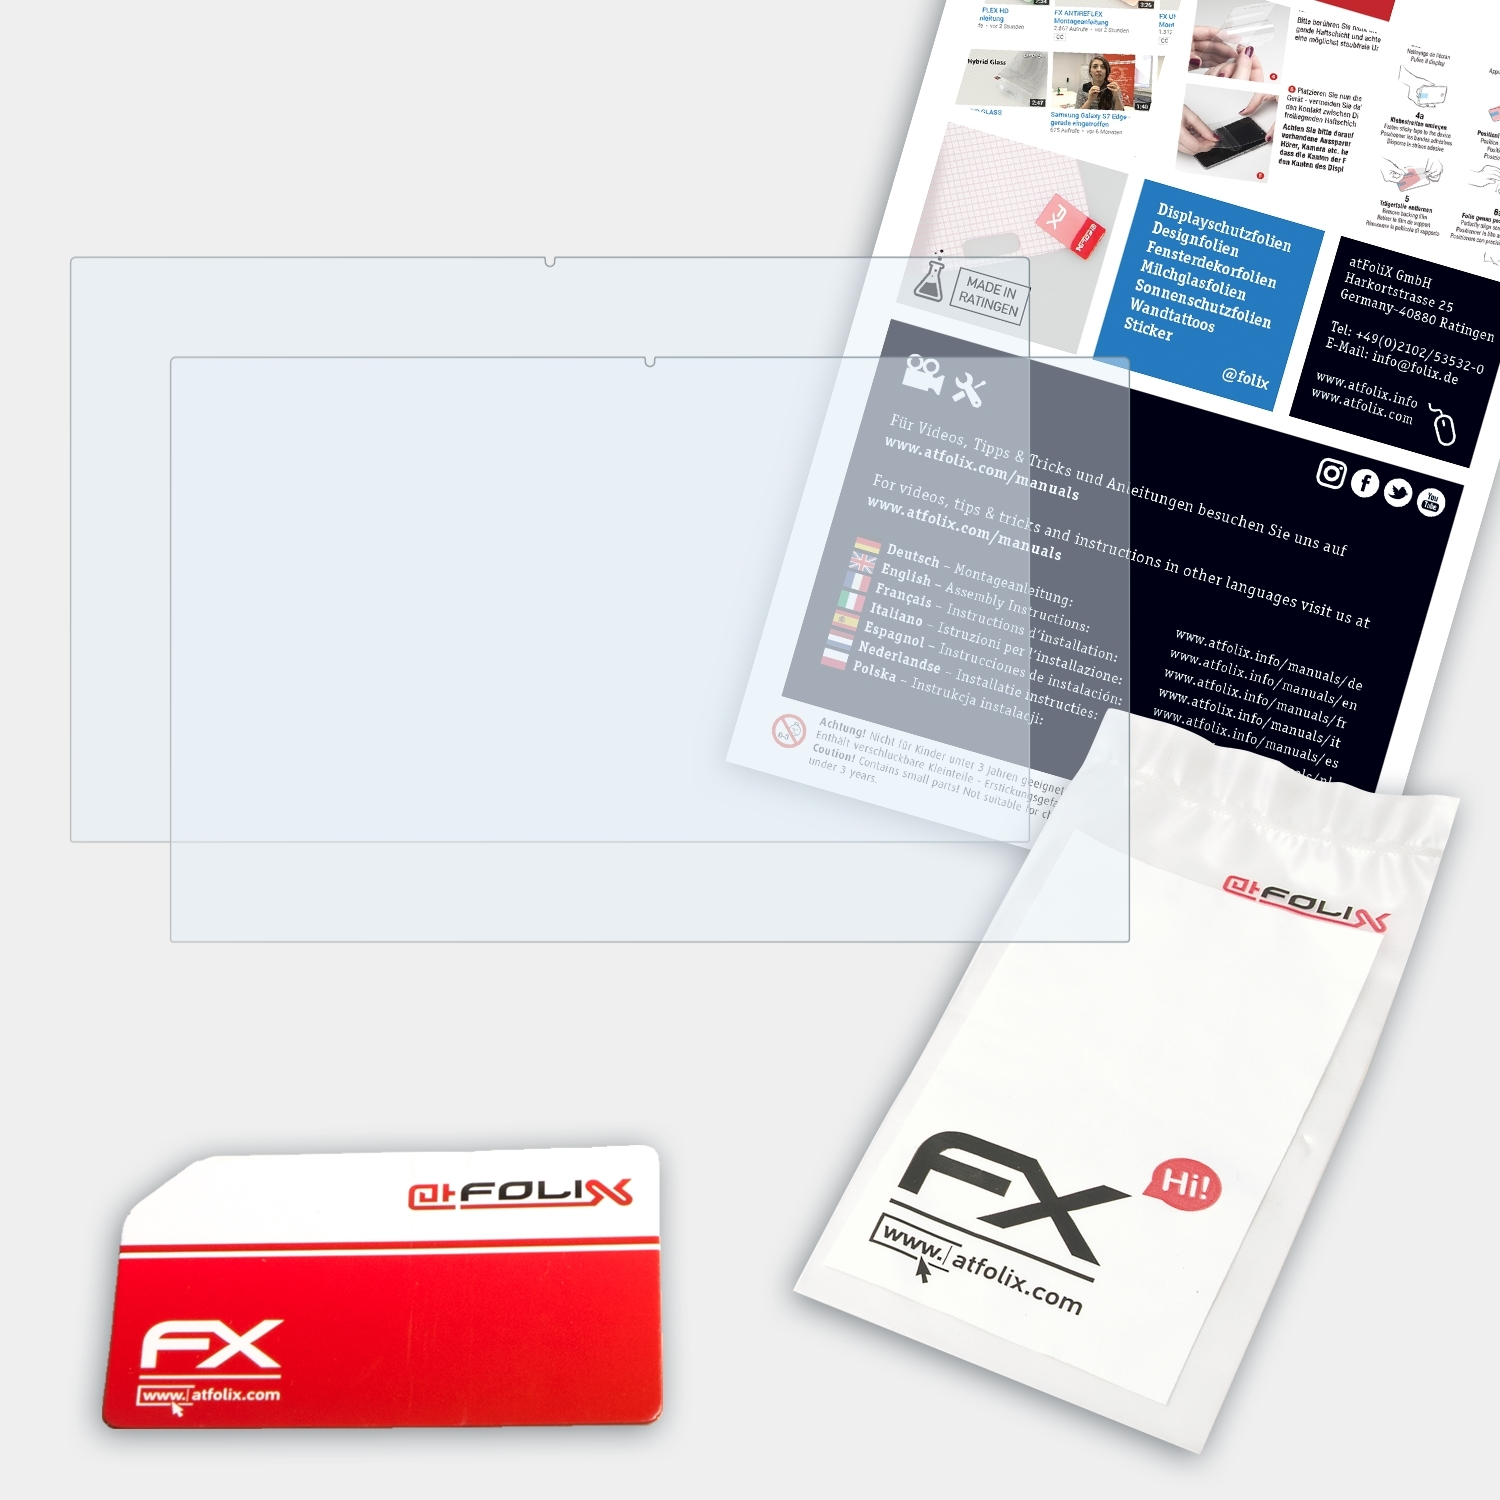 inch)) Book Flex FX-Clear 2x (15 Displayschutz(für Samsung Galaxy ATFOLIX